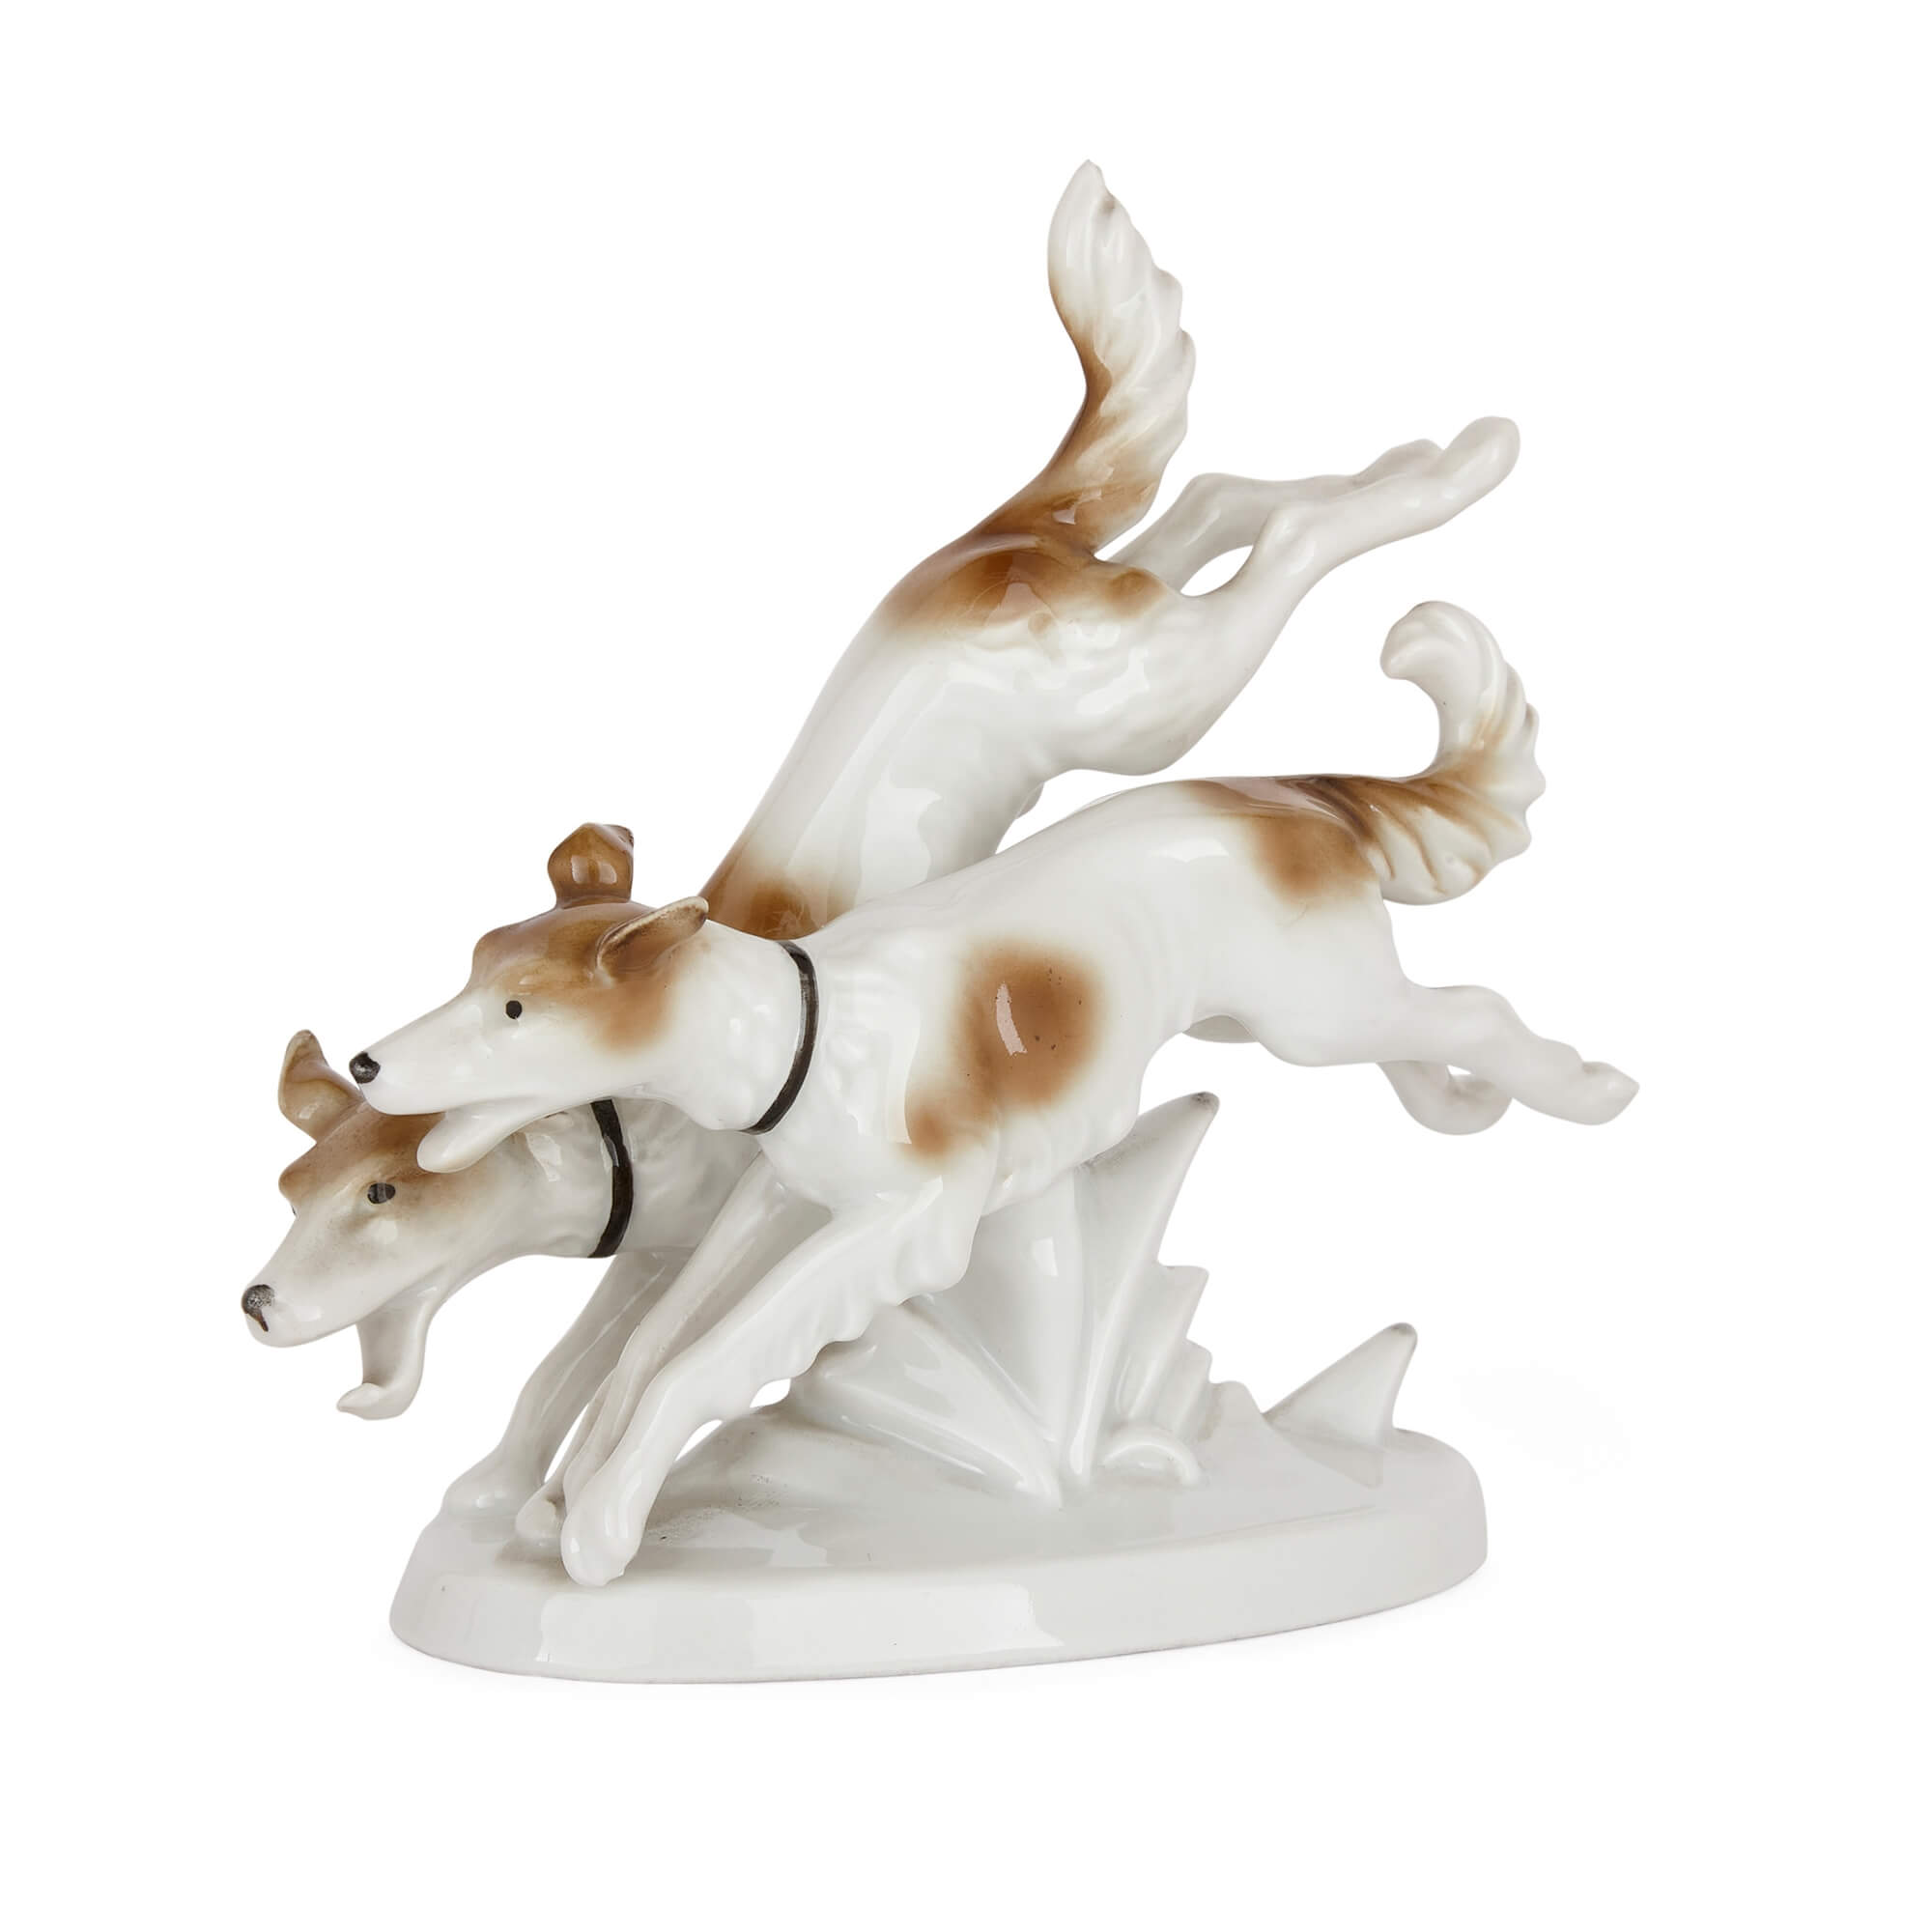 German Porcelain Model of Two Dogs by Gerold Porzellan